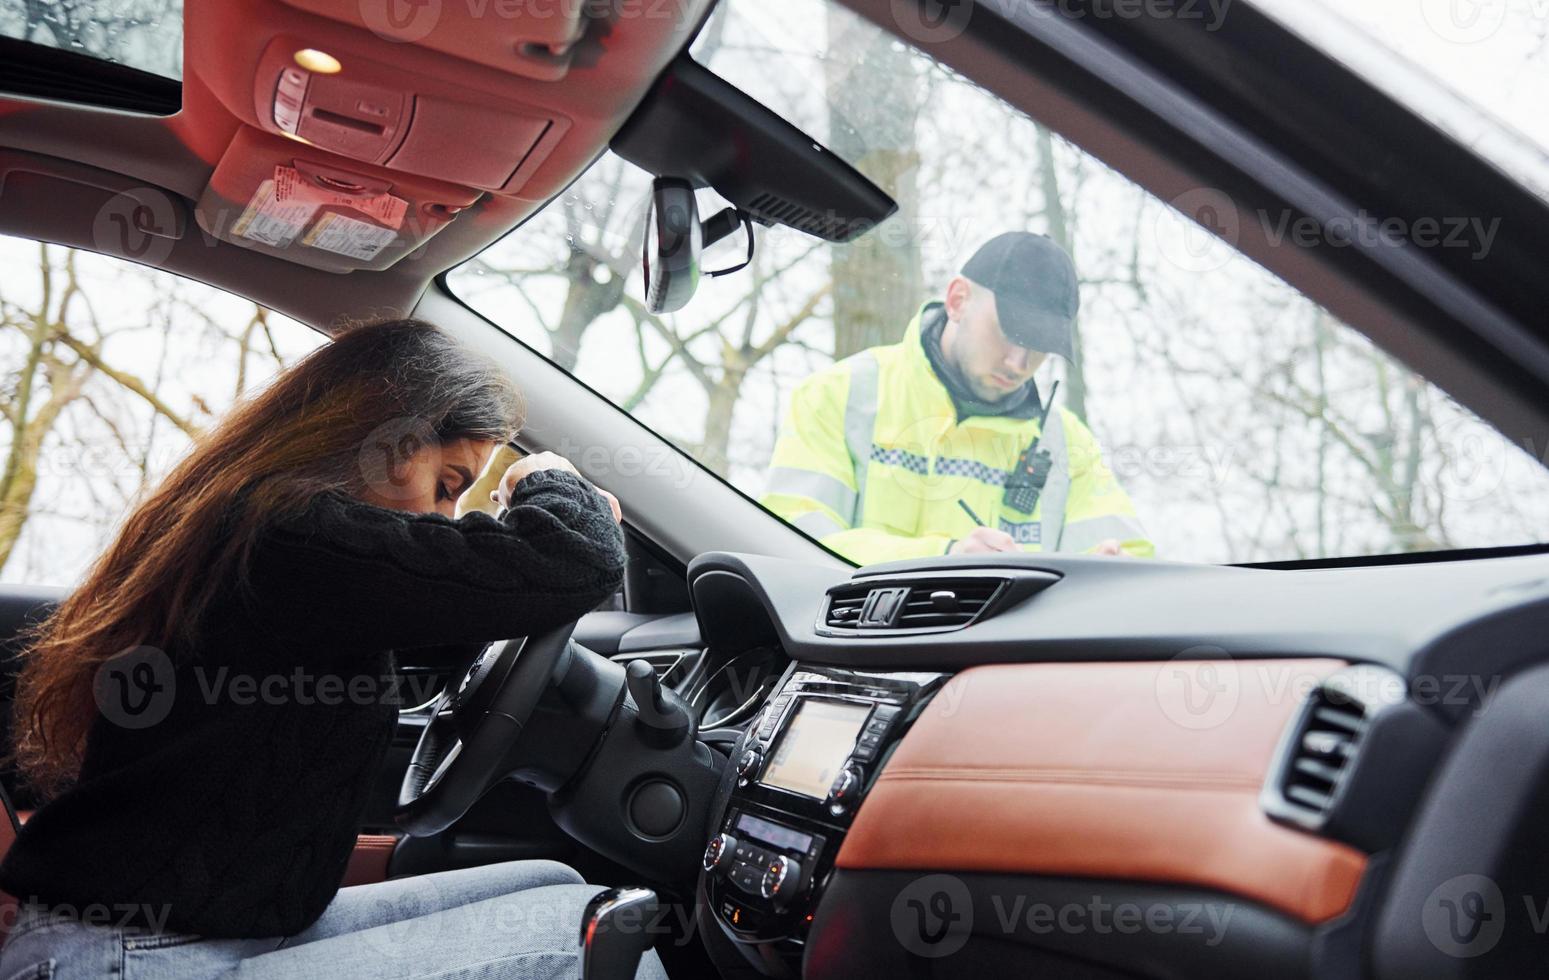 chicas se siente mal. oficial de policía masculino con uniforme verde revisando el vehículo en la carretera foto